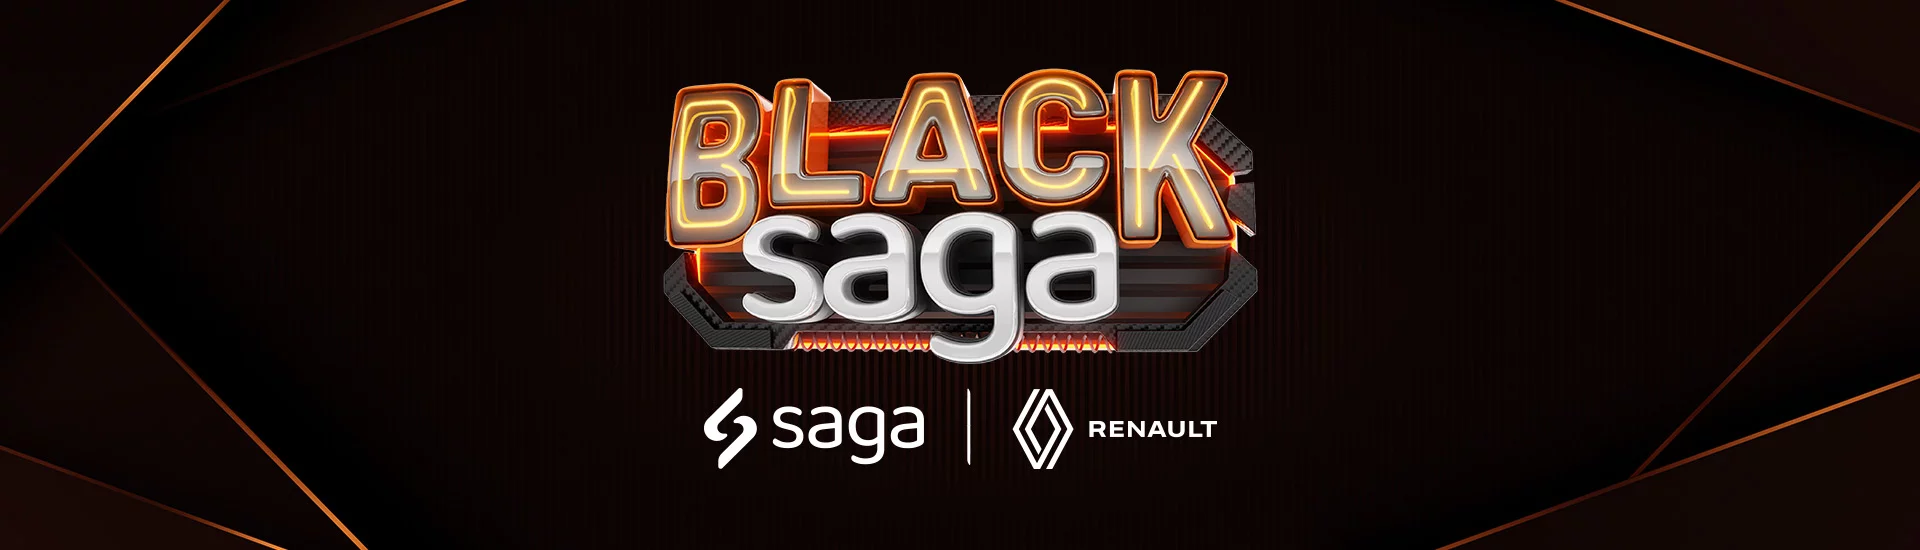 Black Friday Saga Renault!